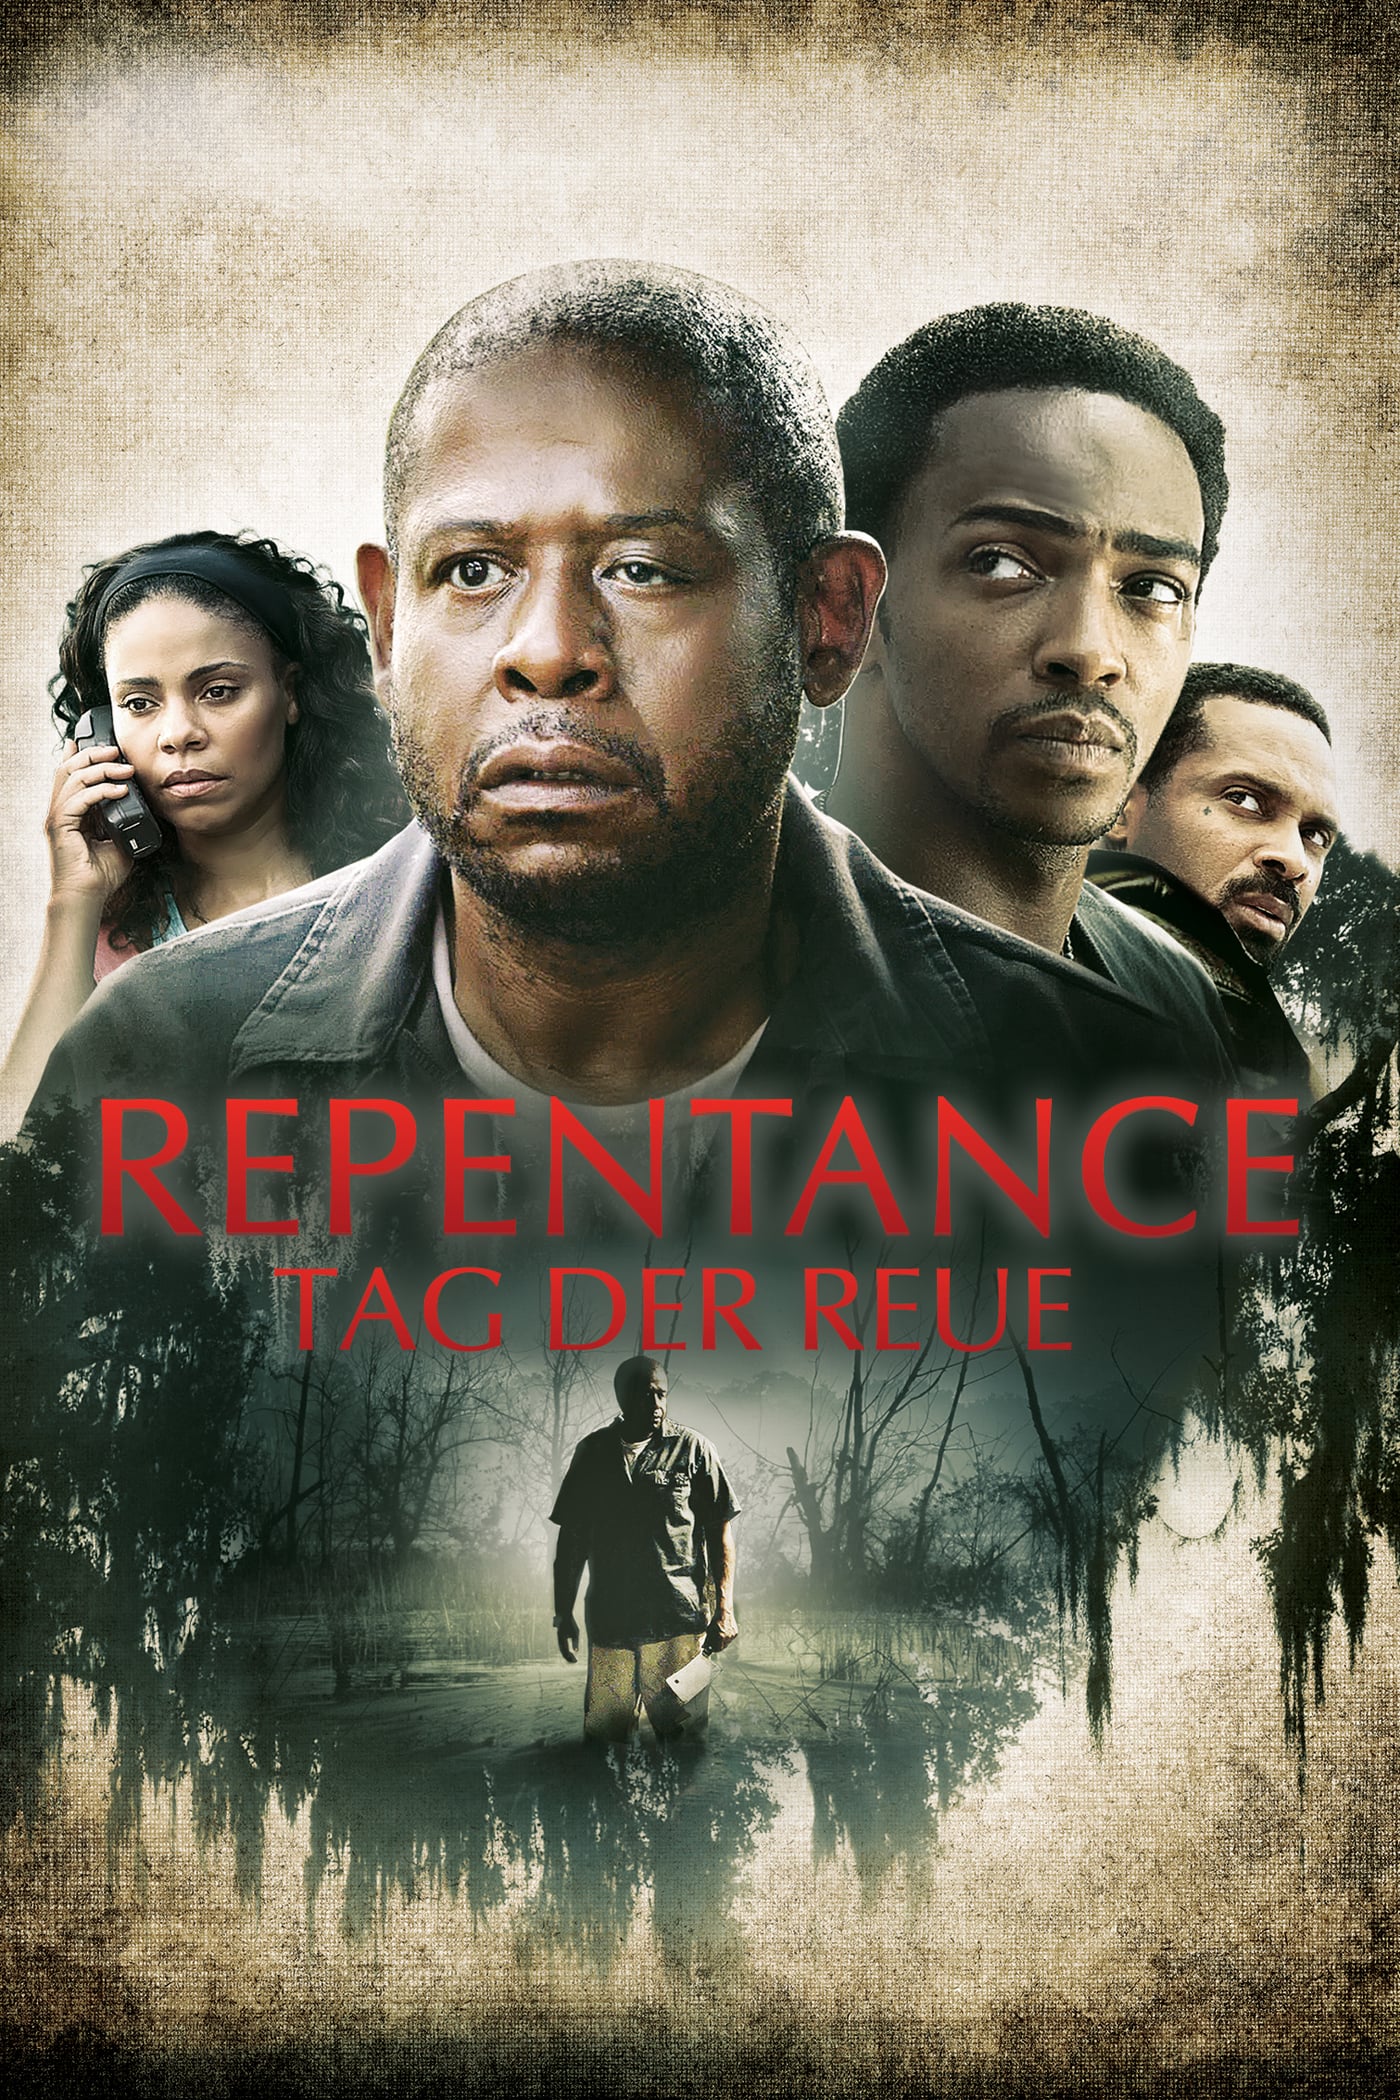 Plakat von "Repentance - Tag der Reue"